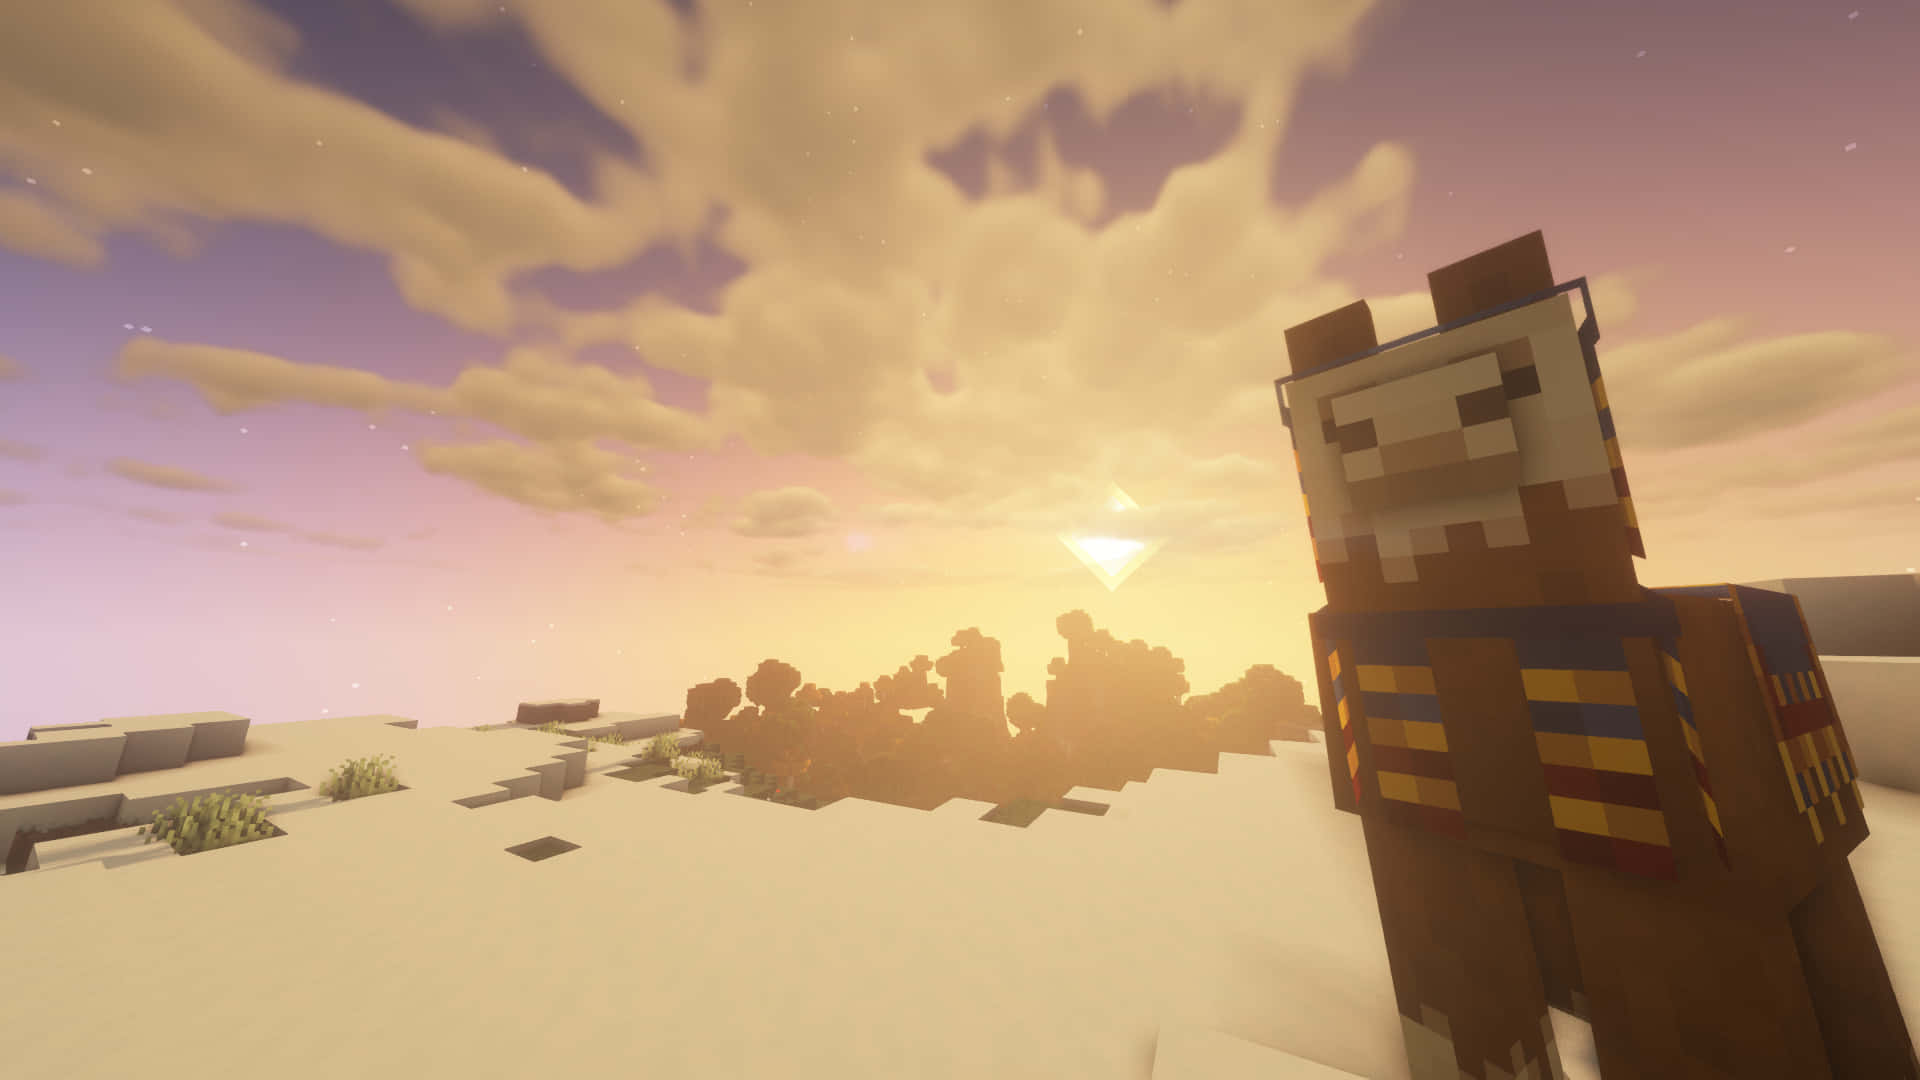 Bestauneden Herrlichen Minecraft Sonnenuntergang. Wallpaper